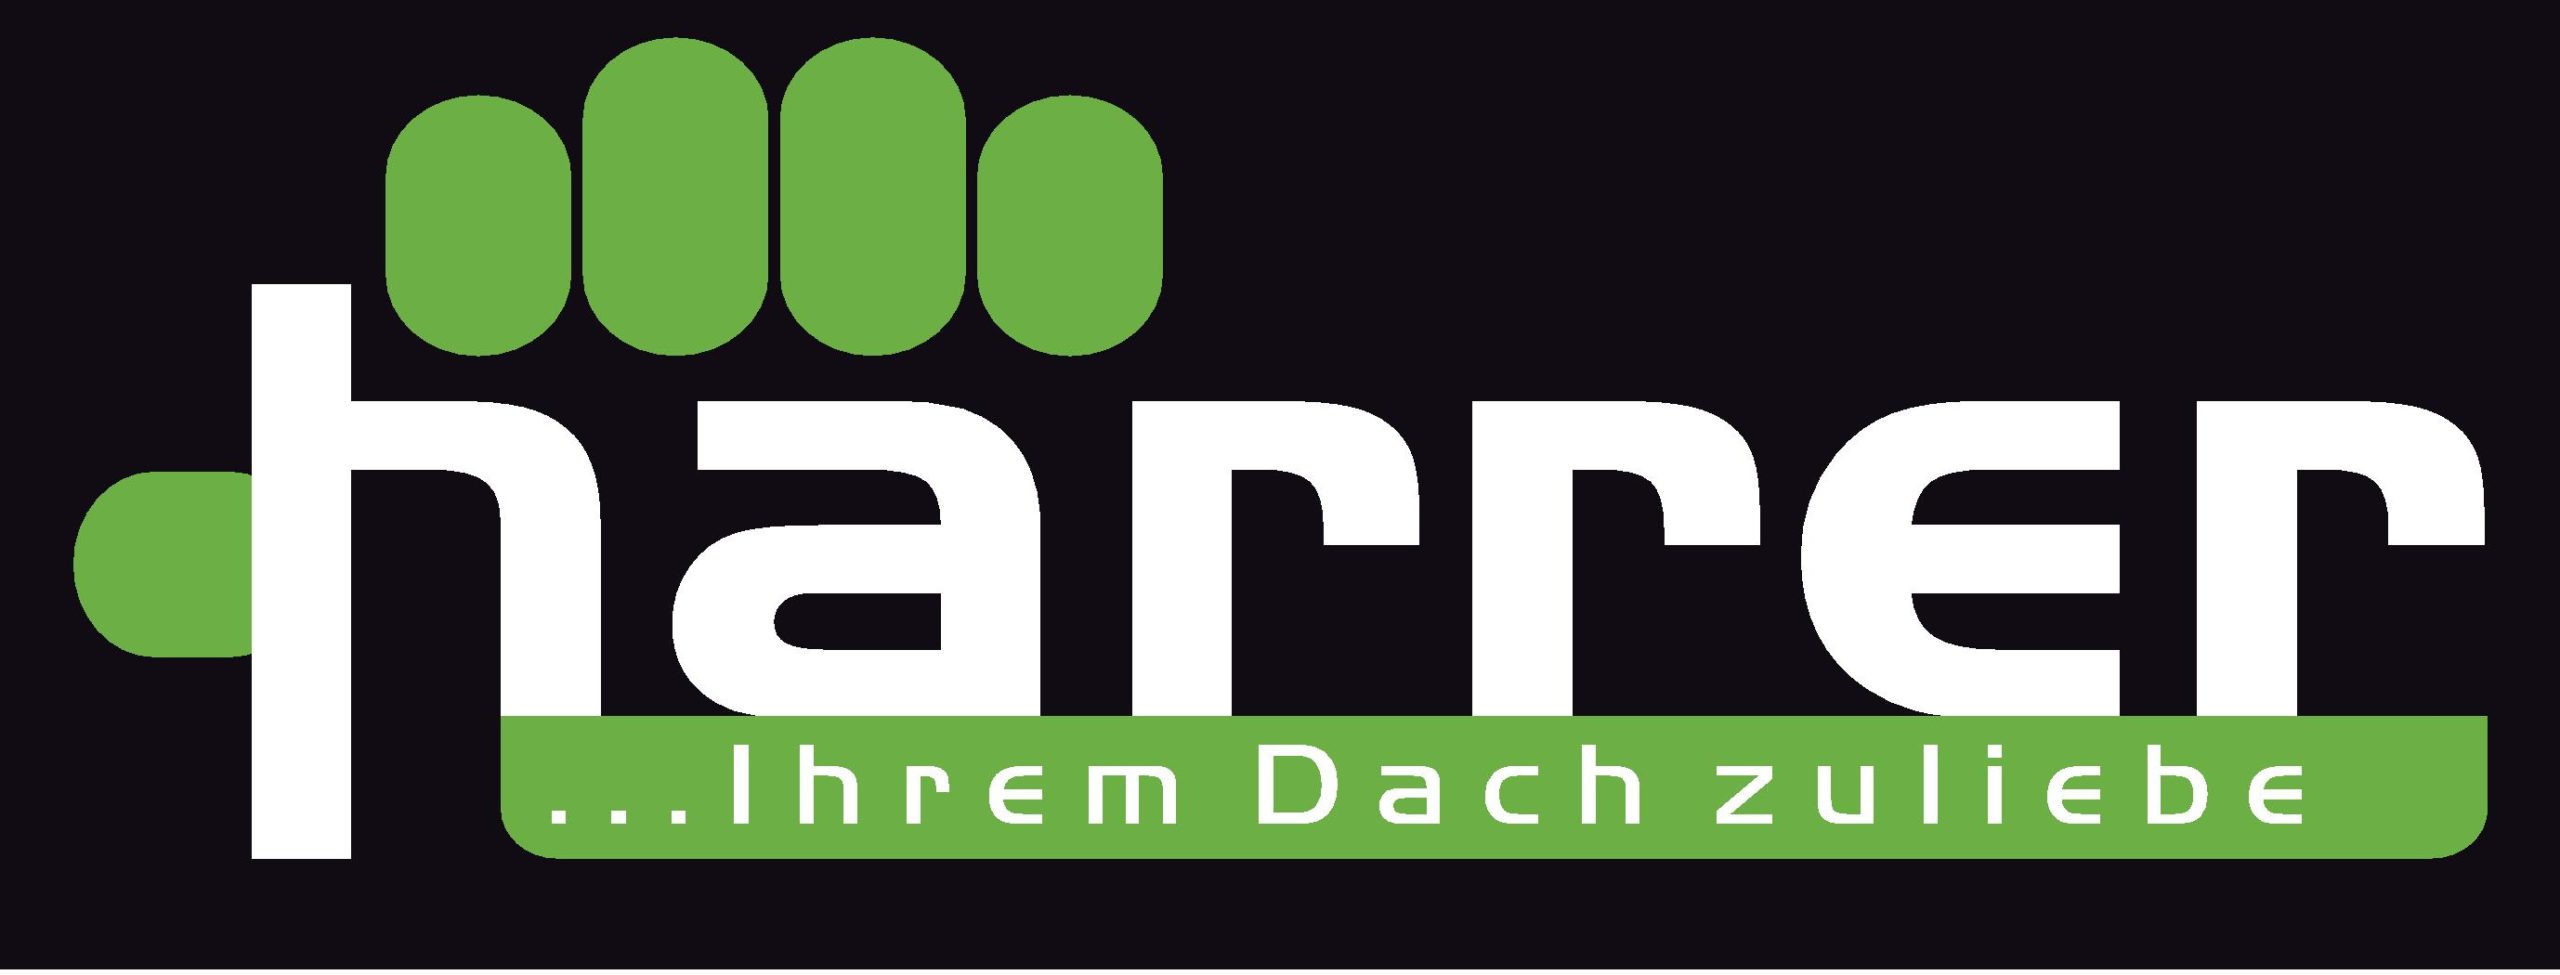 Logo_Siebdruck_Schuerzen_11.12.14-page-001